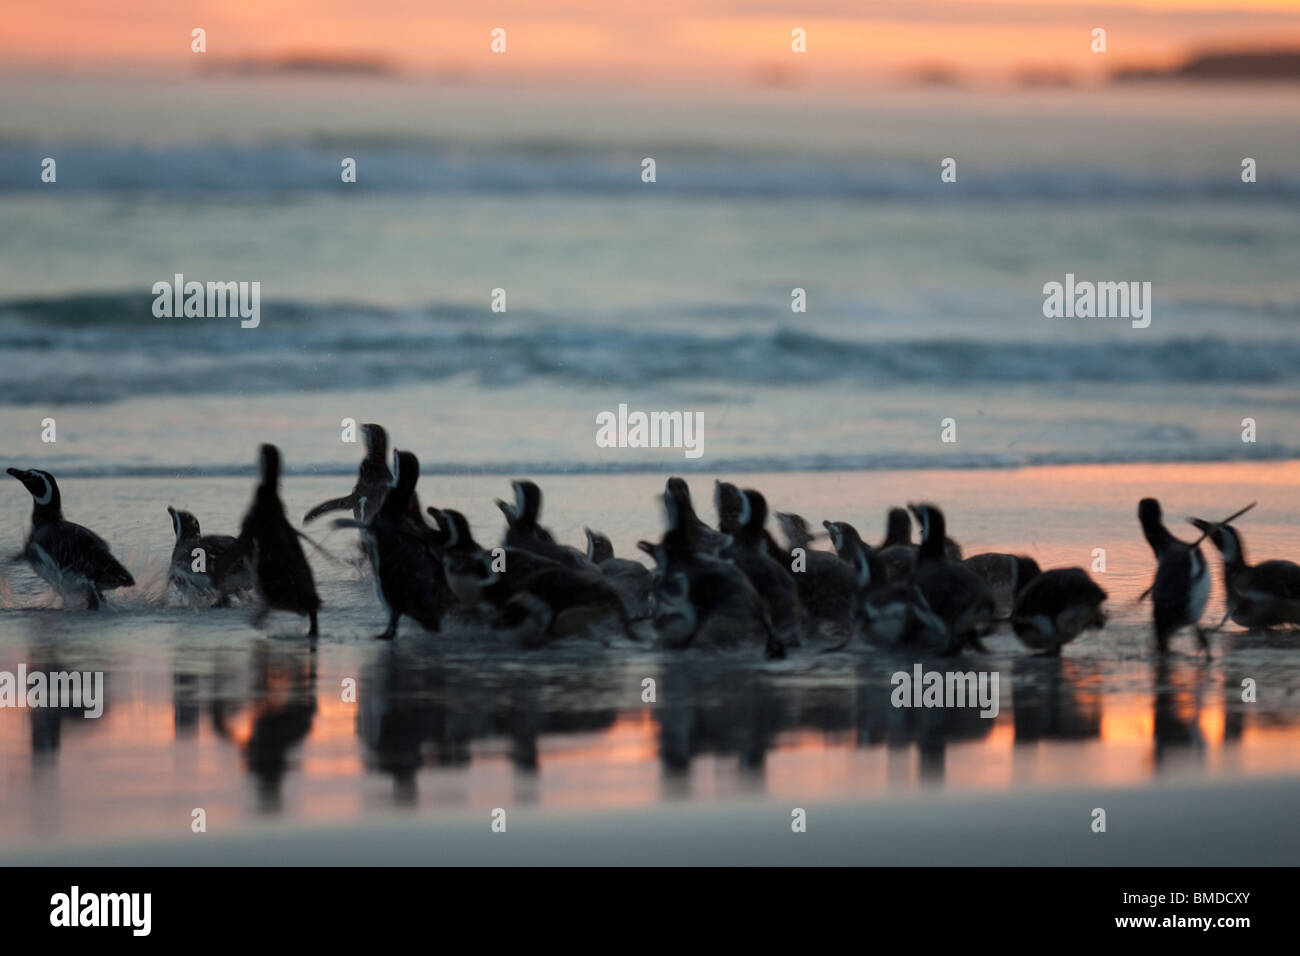 Magellan-Pinguin, Magellanic Penguin, Spheniscus magellanicus, Volunteer Point, Falkland Islands, group in sunset at beach Stock Photo